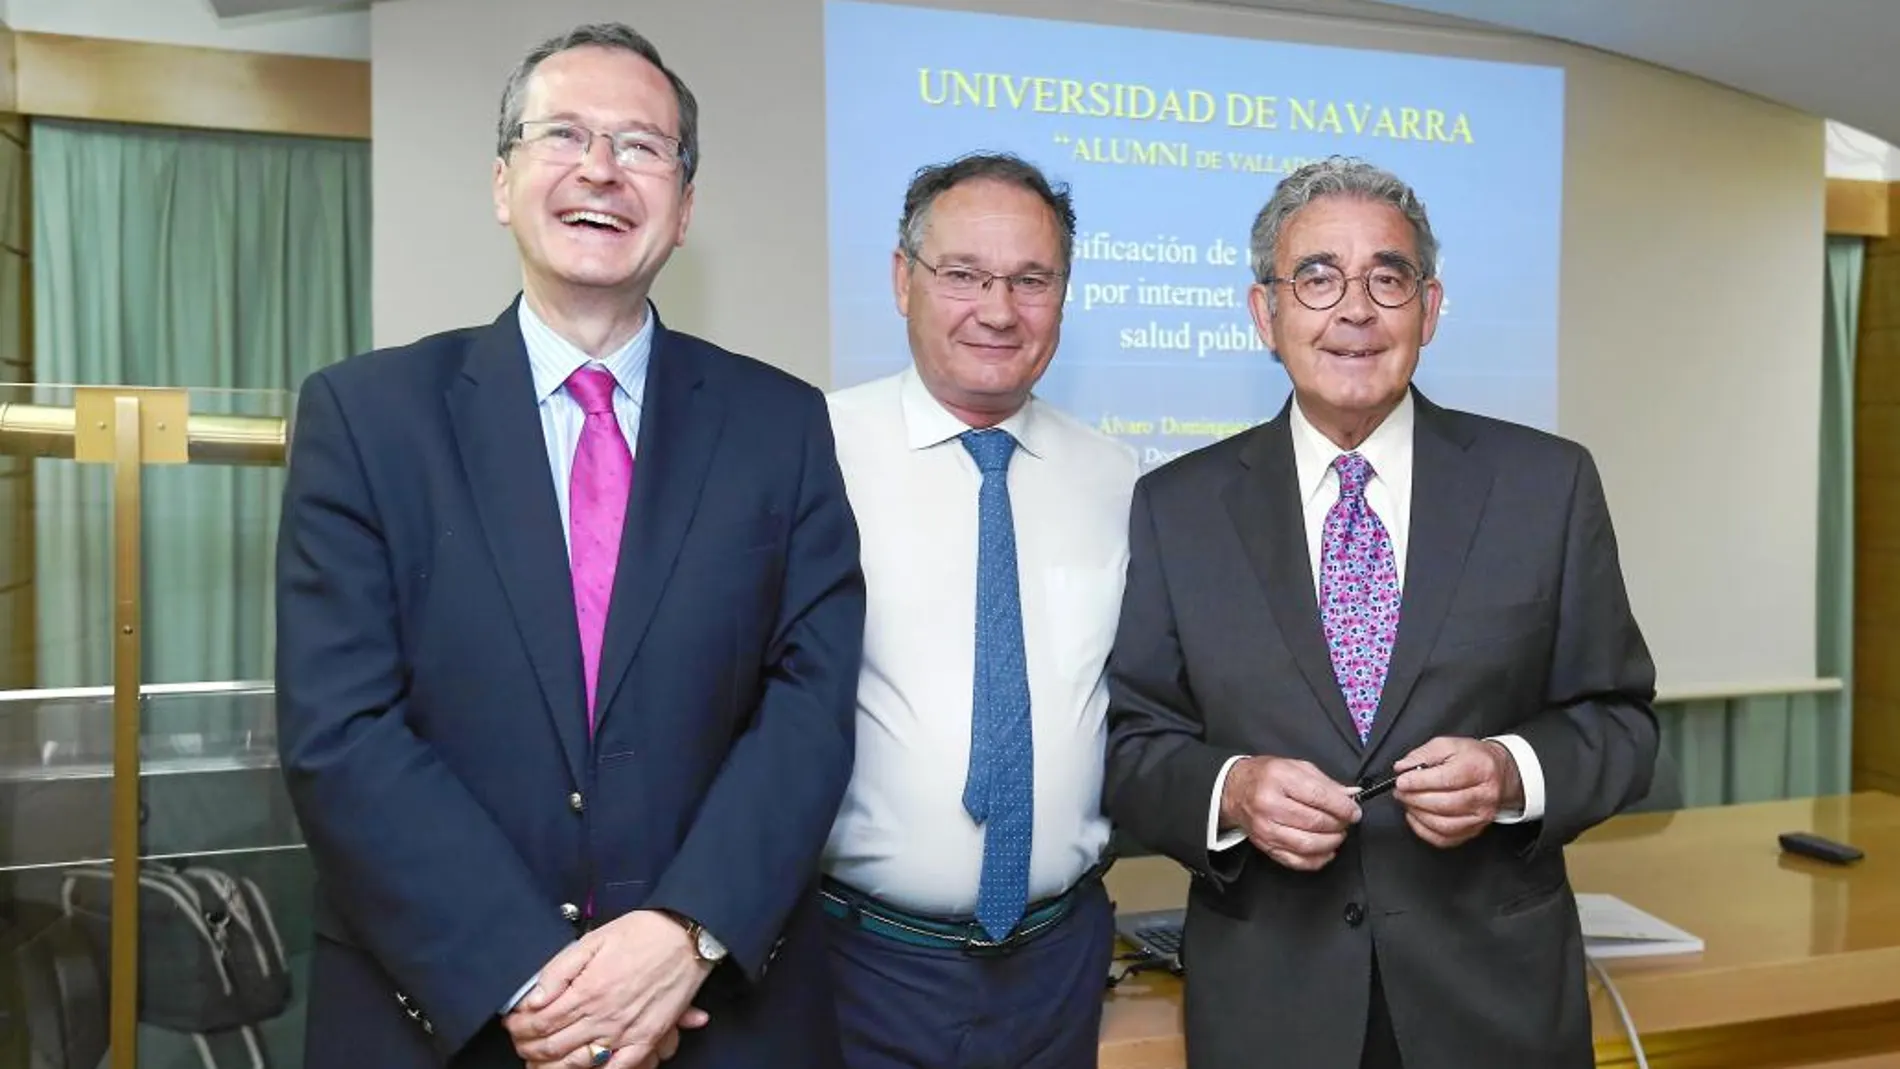 Laureano Trillo, José Antonio Otero y Álvaro Dómiguez-Gil Hurlé